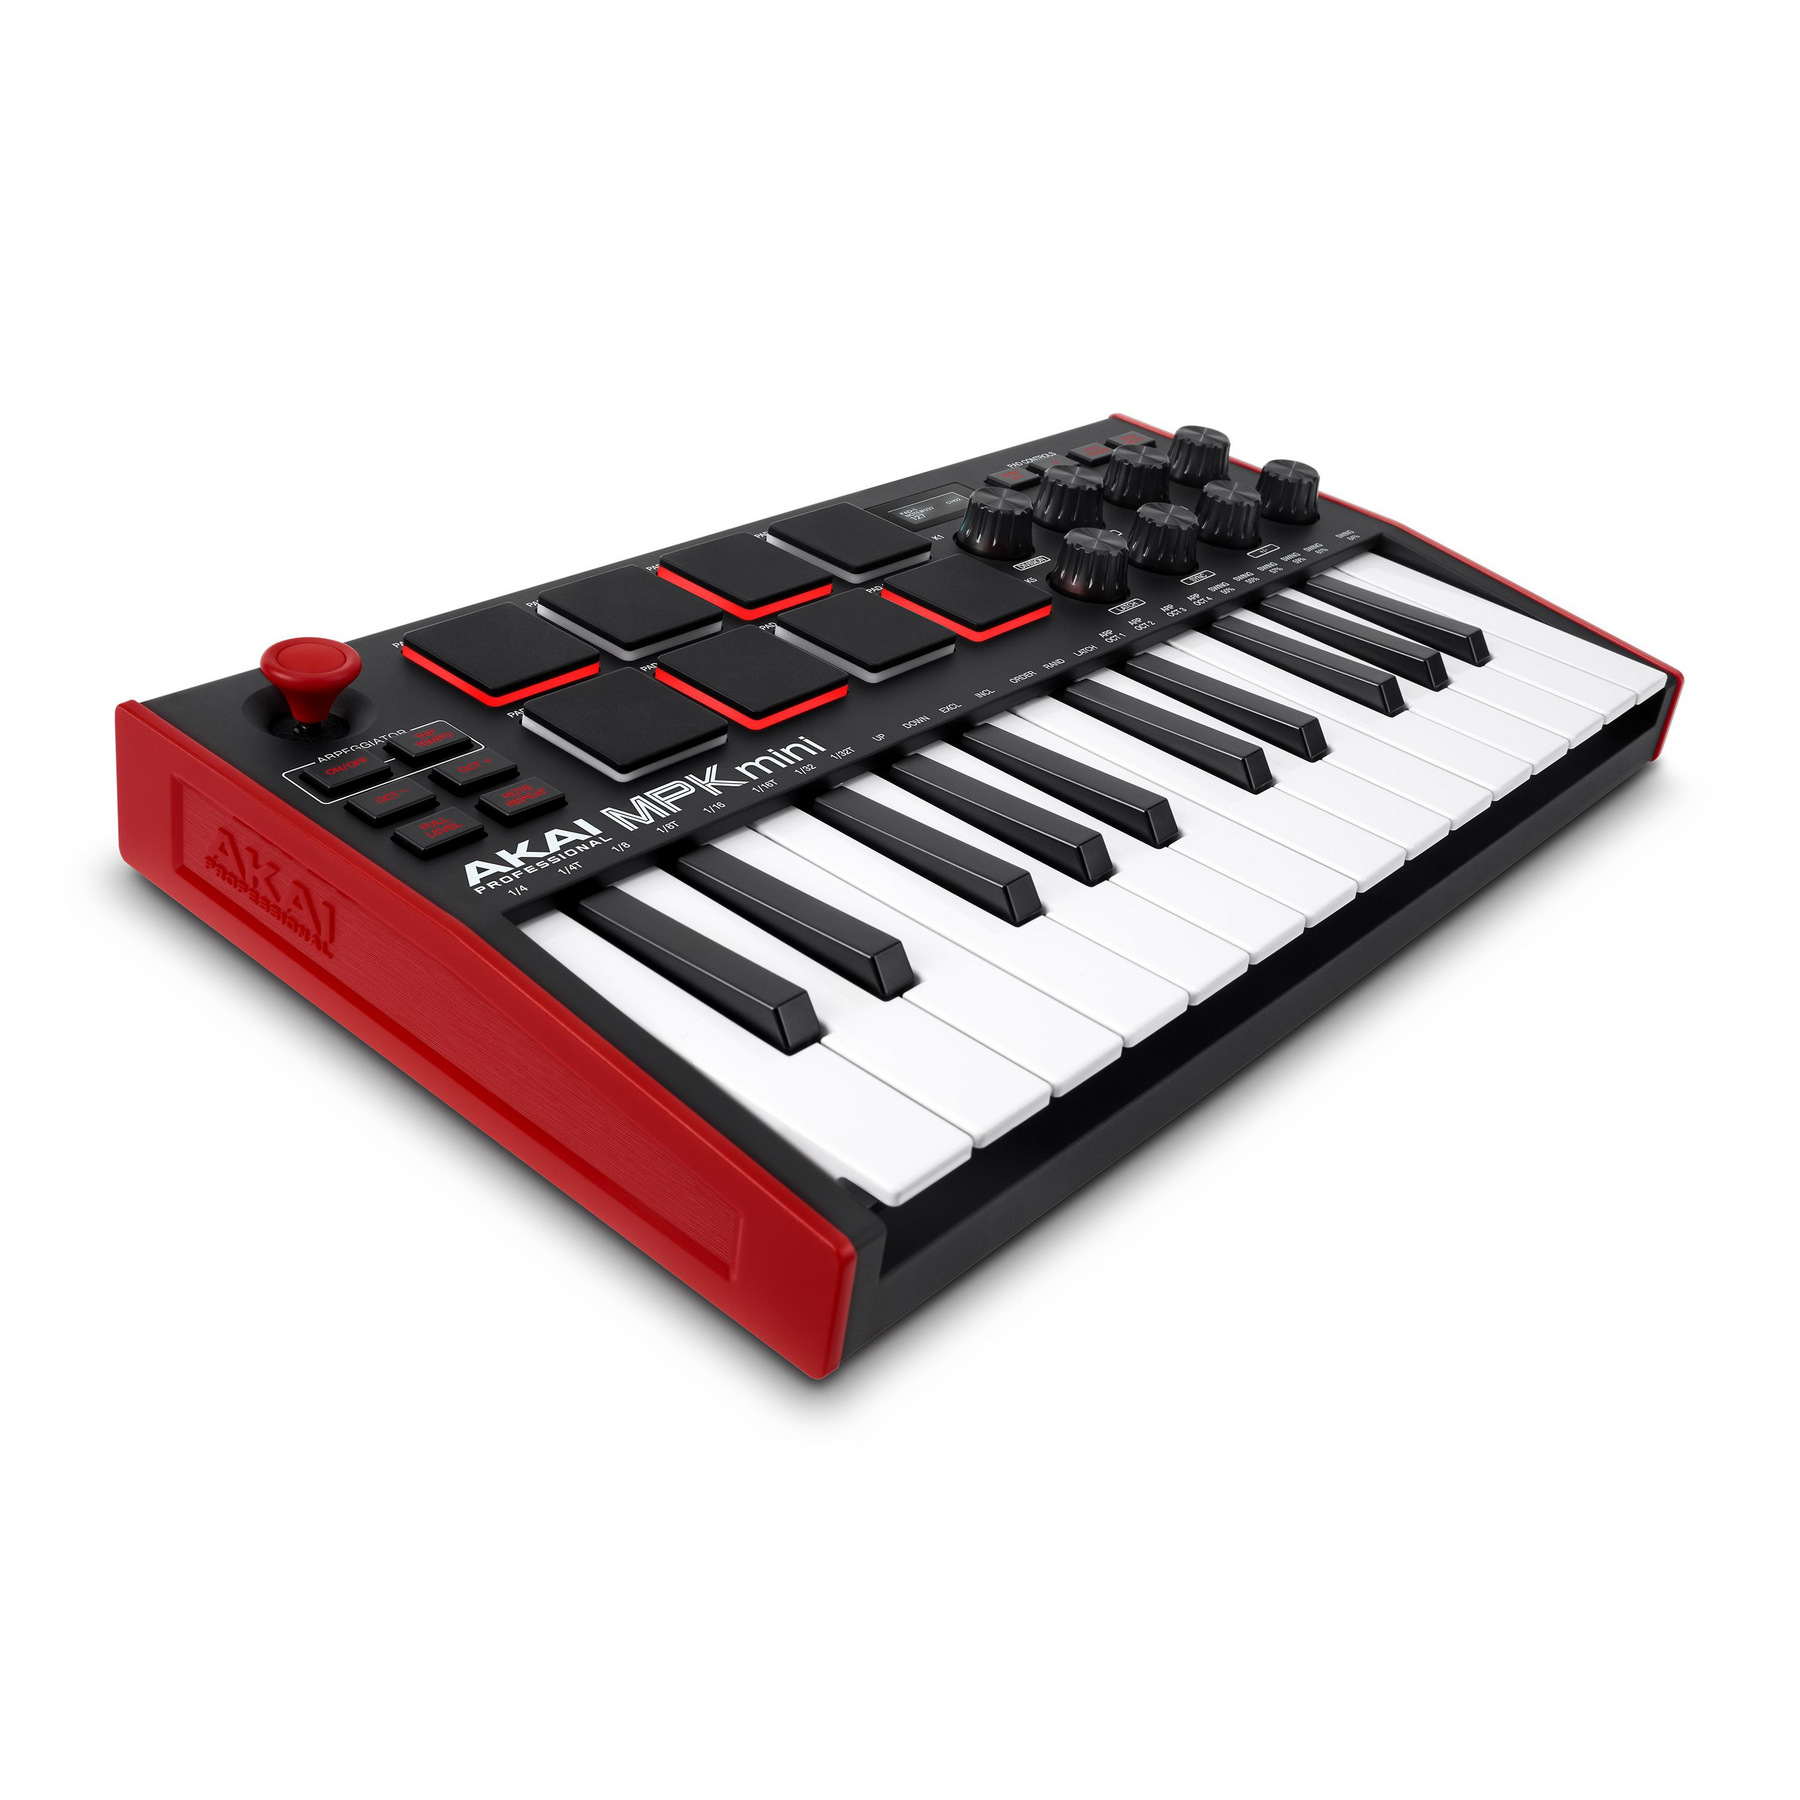 MIDI клавиатуры Akai PRO MPK MINI MK3 midi музыкальные системы интерфейсы контроллеры behringer x touch mini